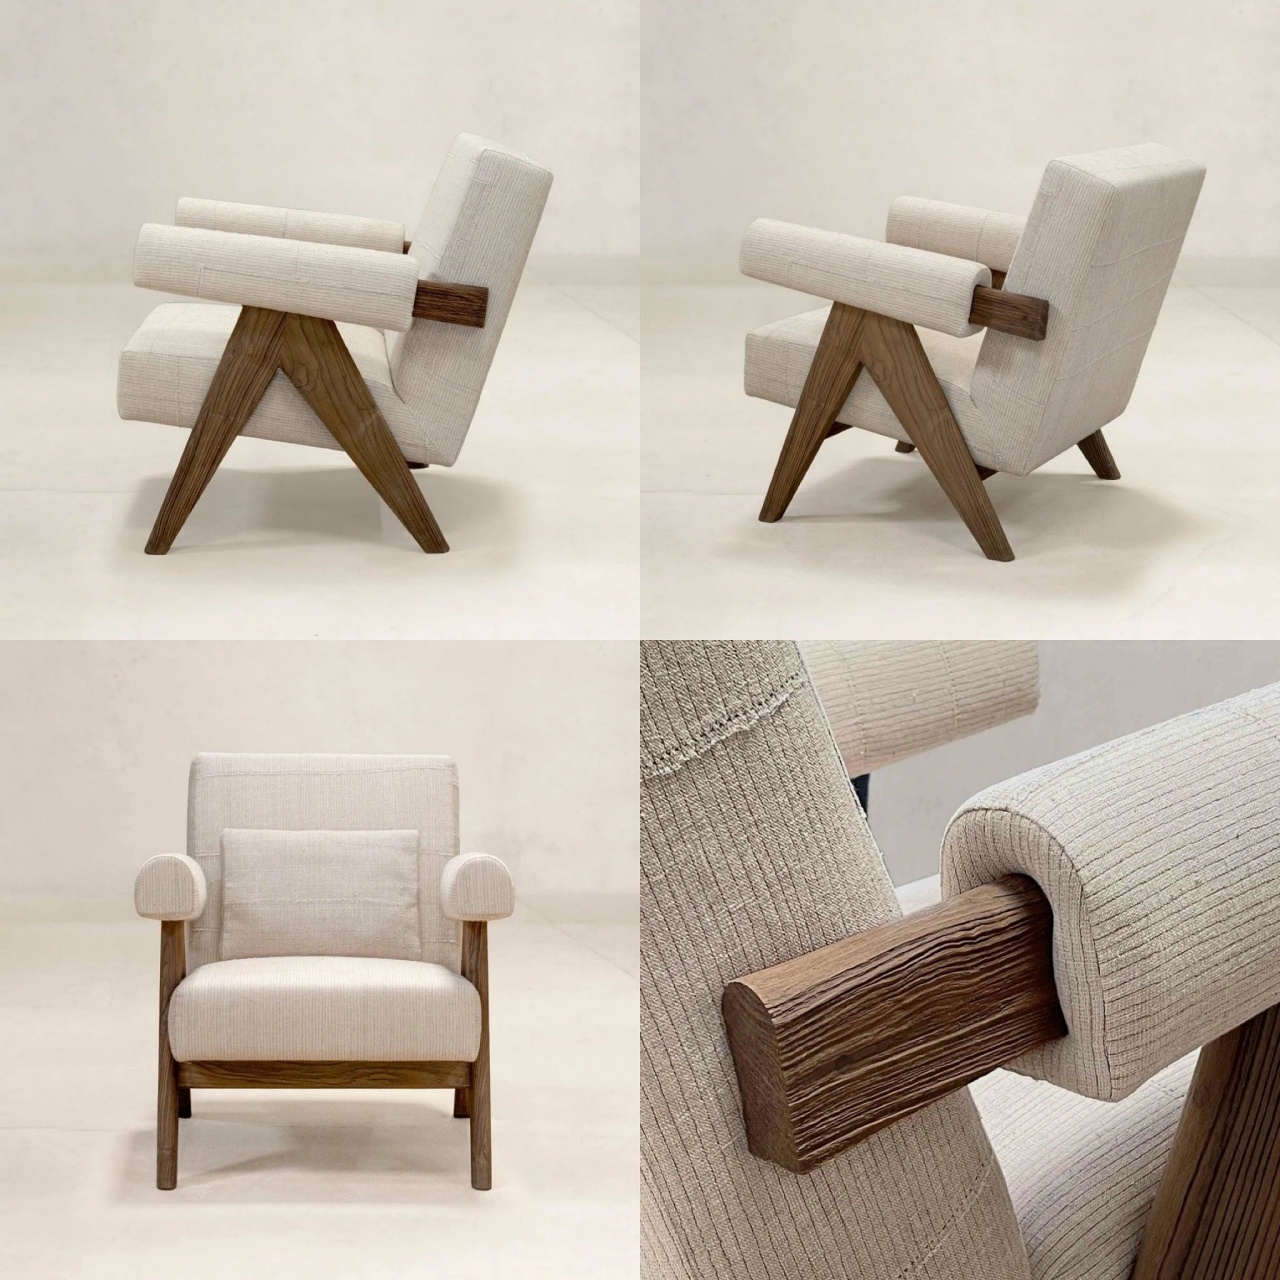 孟買;印度;拼布;椅子;家具;紡織品;Padmaja Krishnan;KeSa